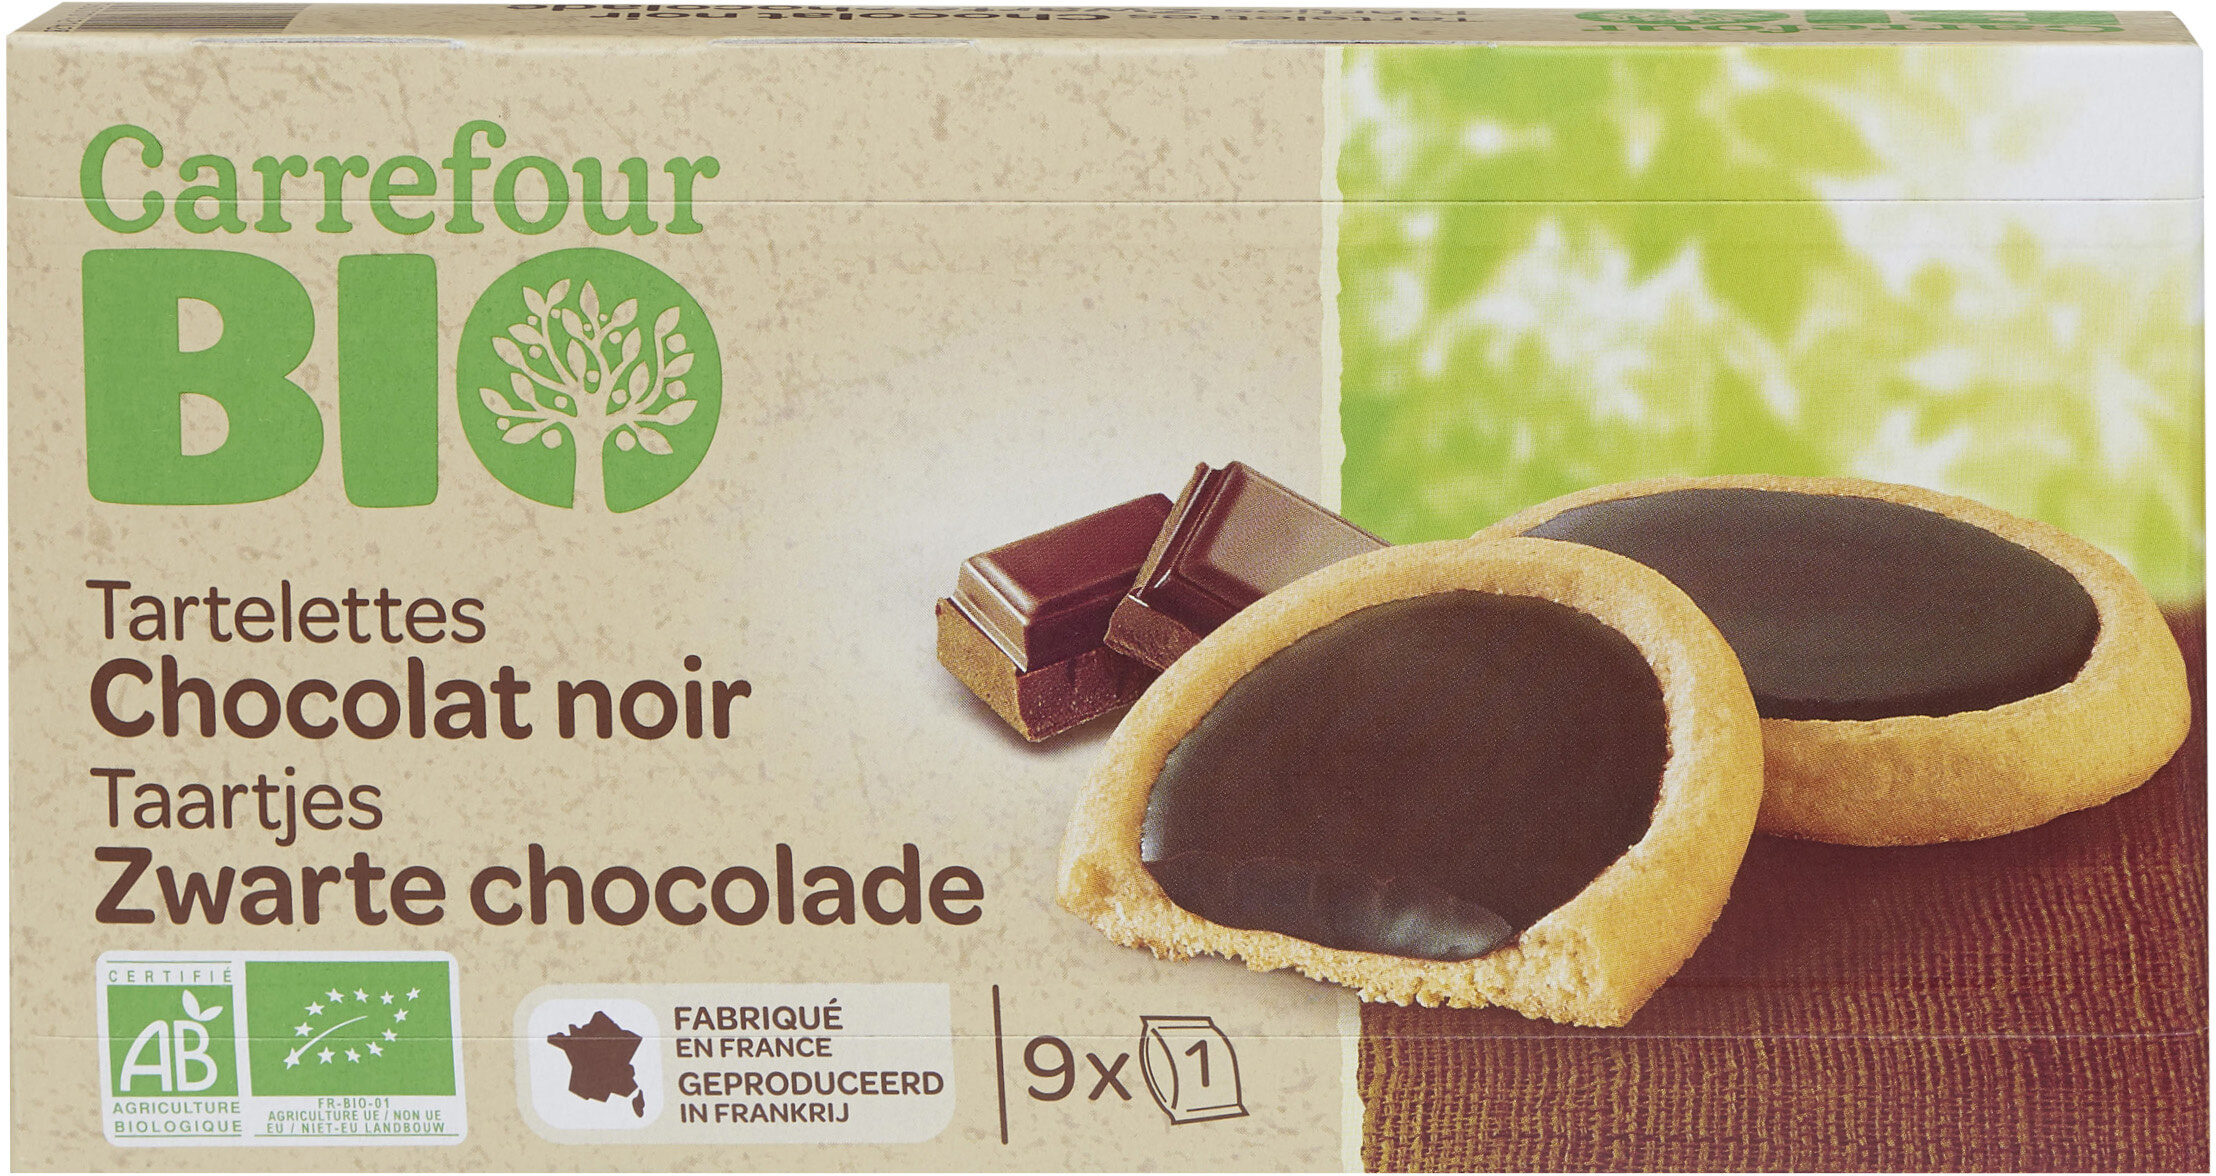 Tartelettes au Chocolat noir - Producte - fr